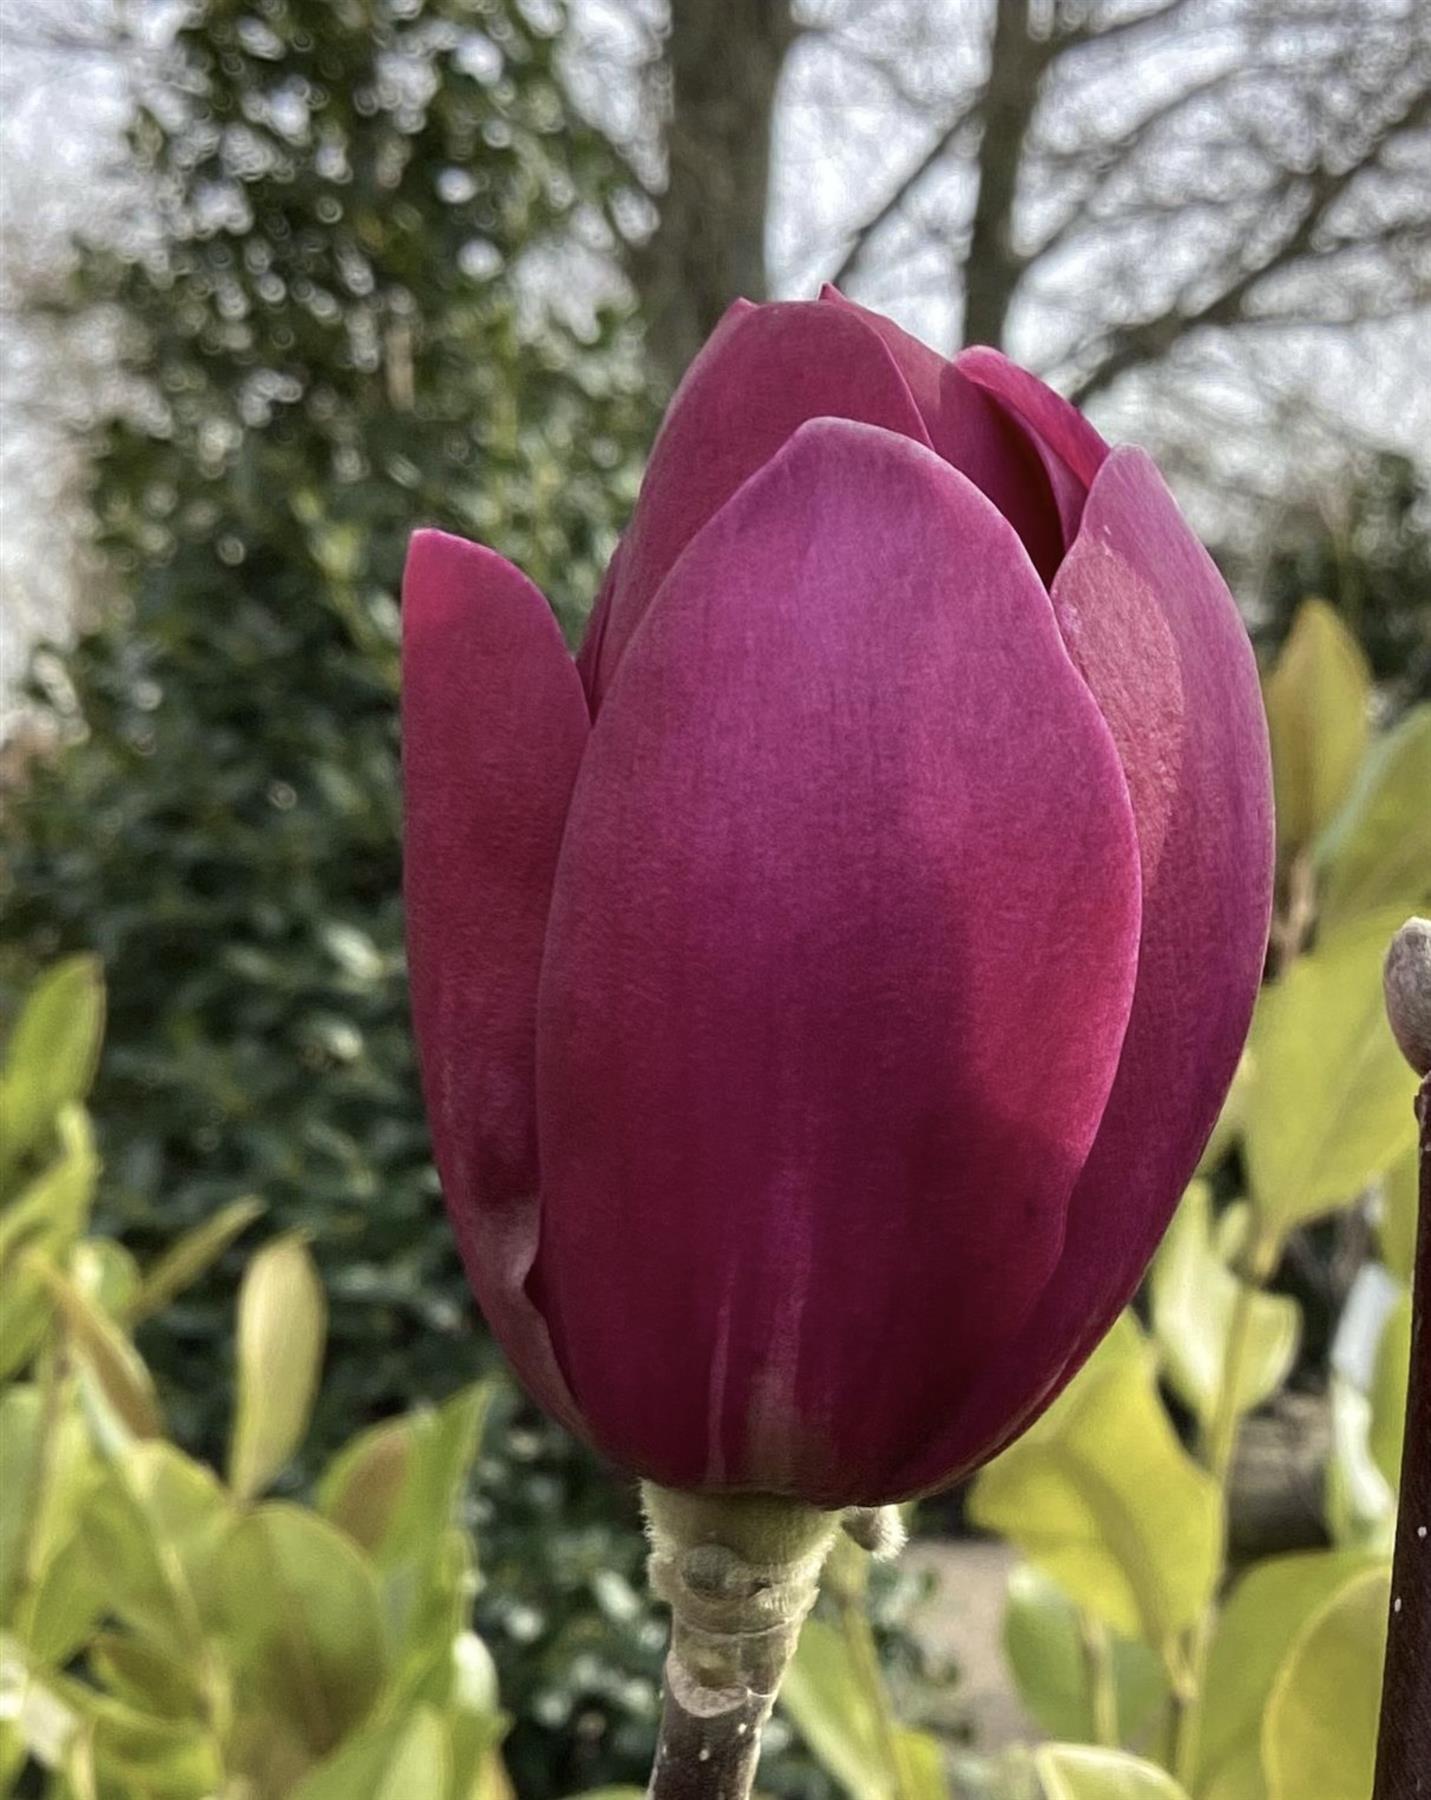 Magnolia Black Tulip 1/4 Standard - 190-225cm - 18lt